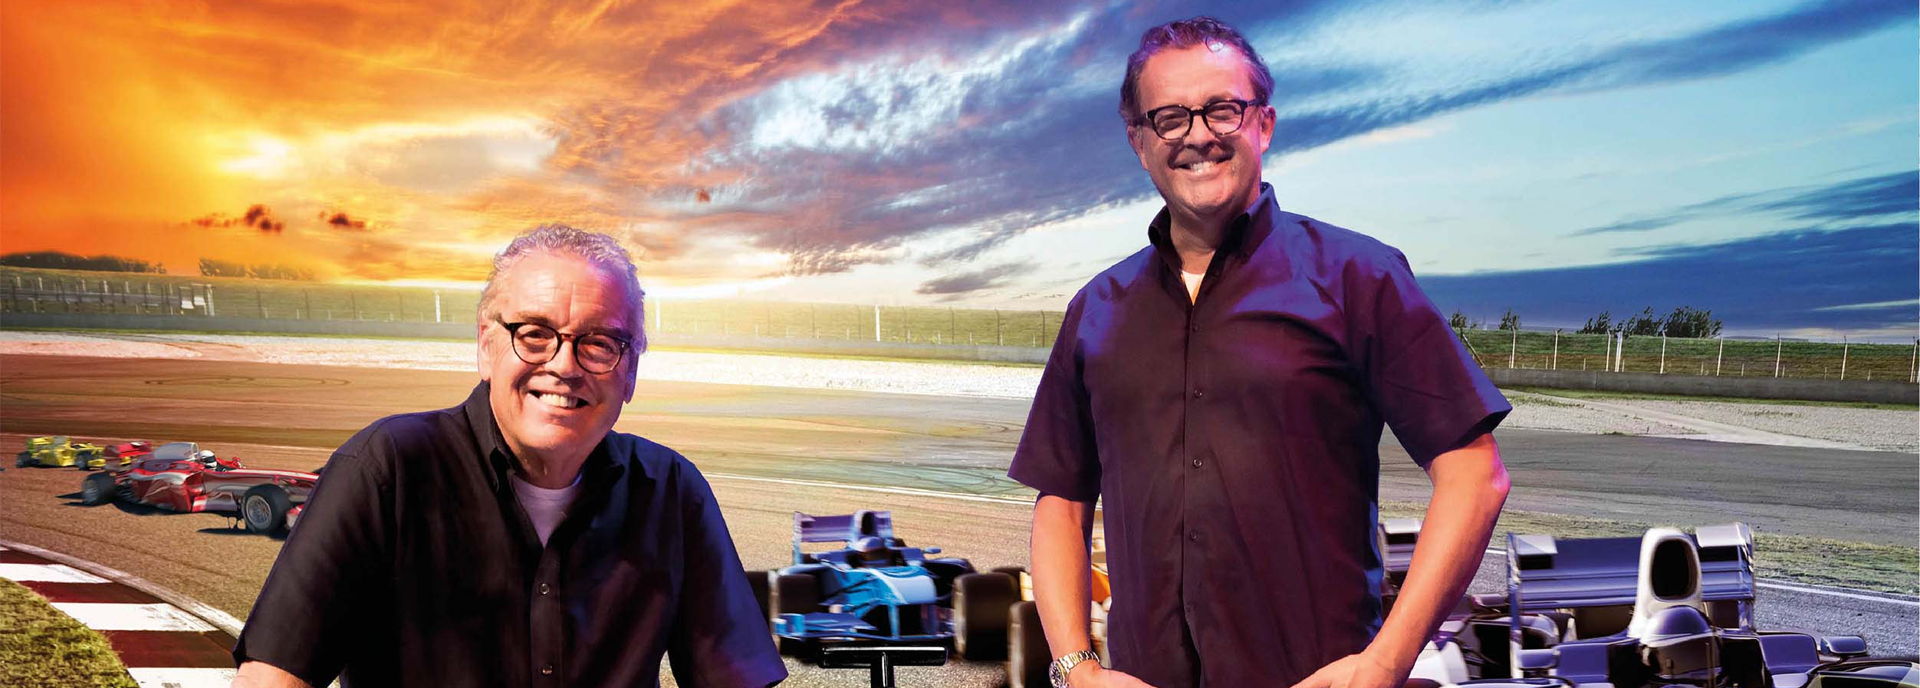 Formule 1 Show - met Olav Mol & Jack Plooij - 2022 in De Tamboer